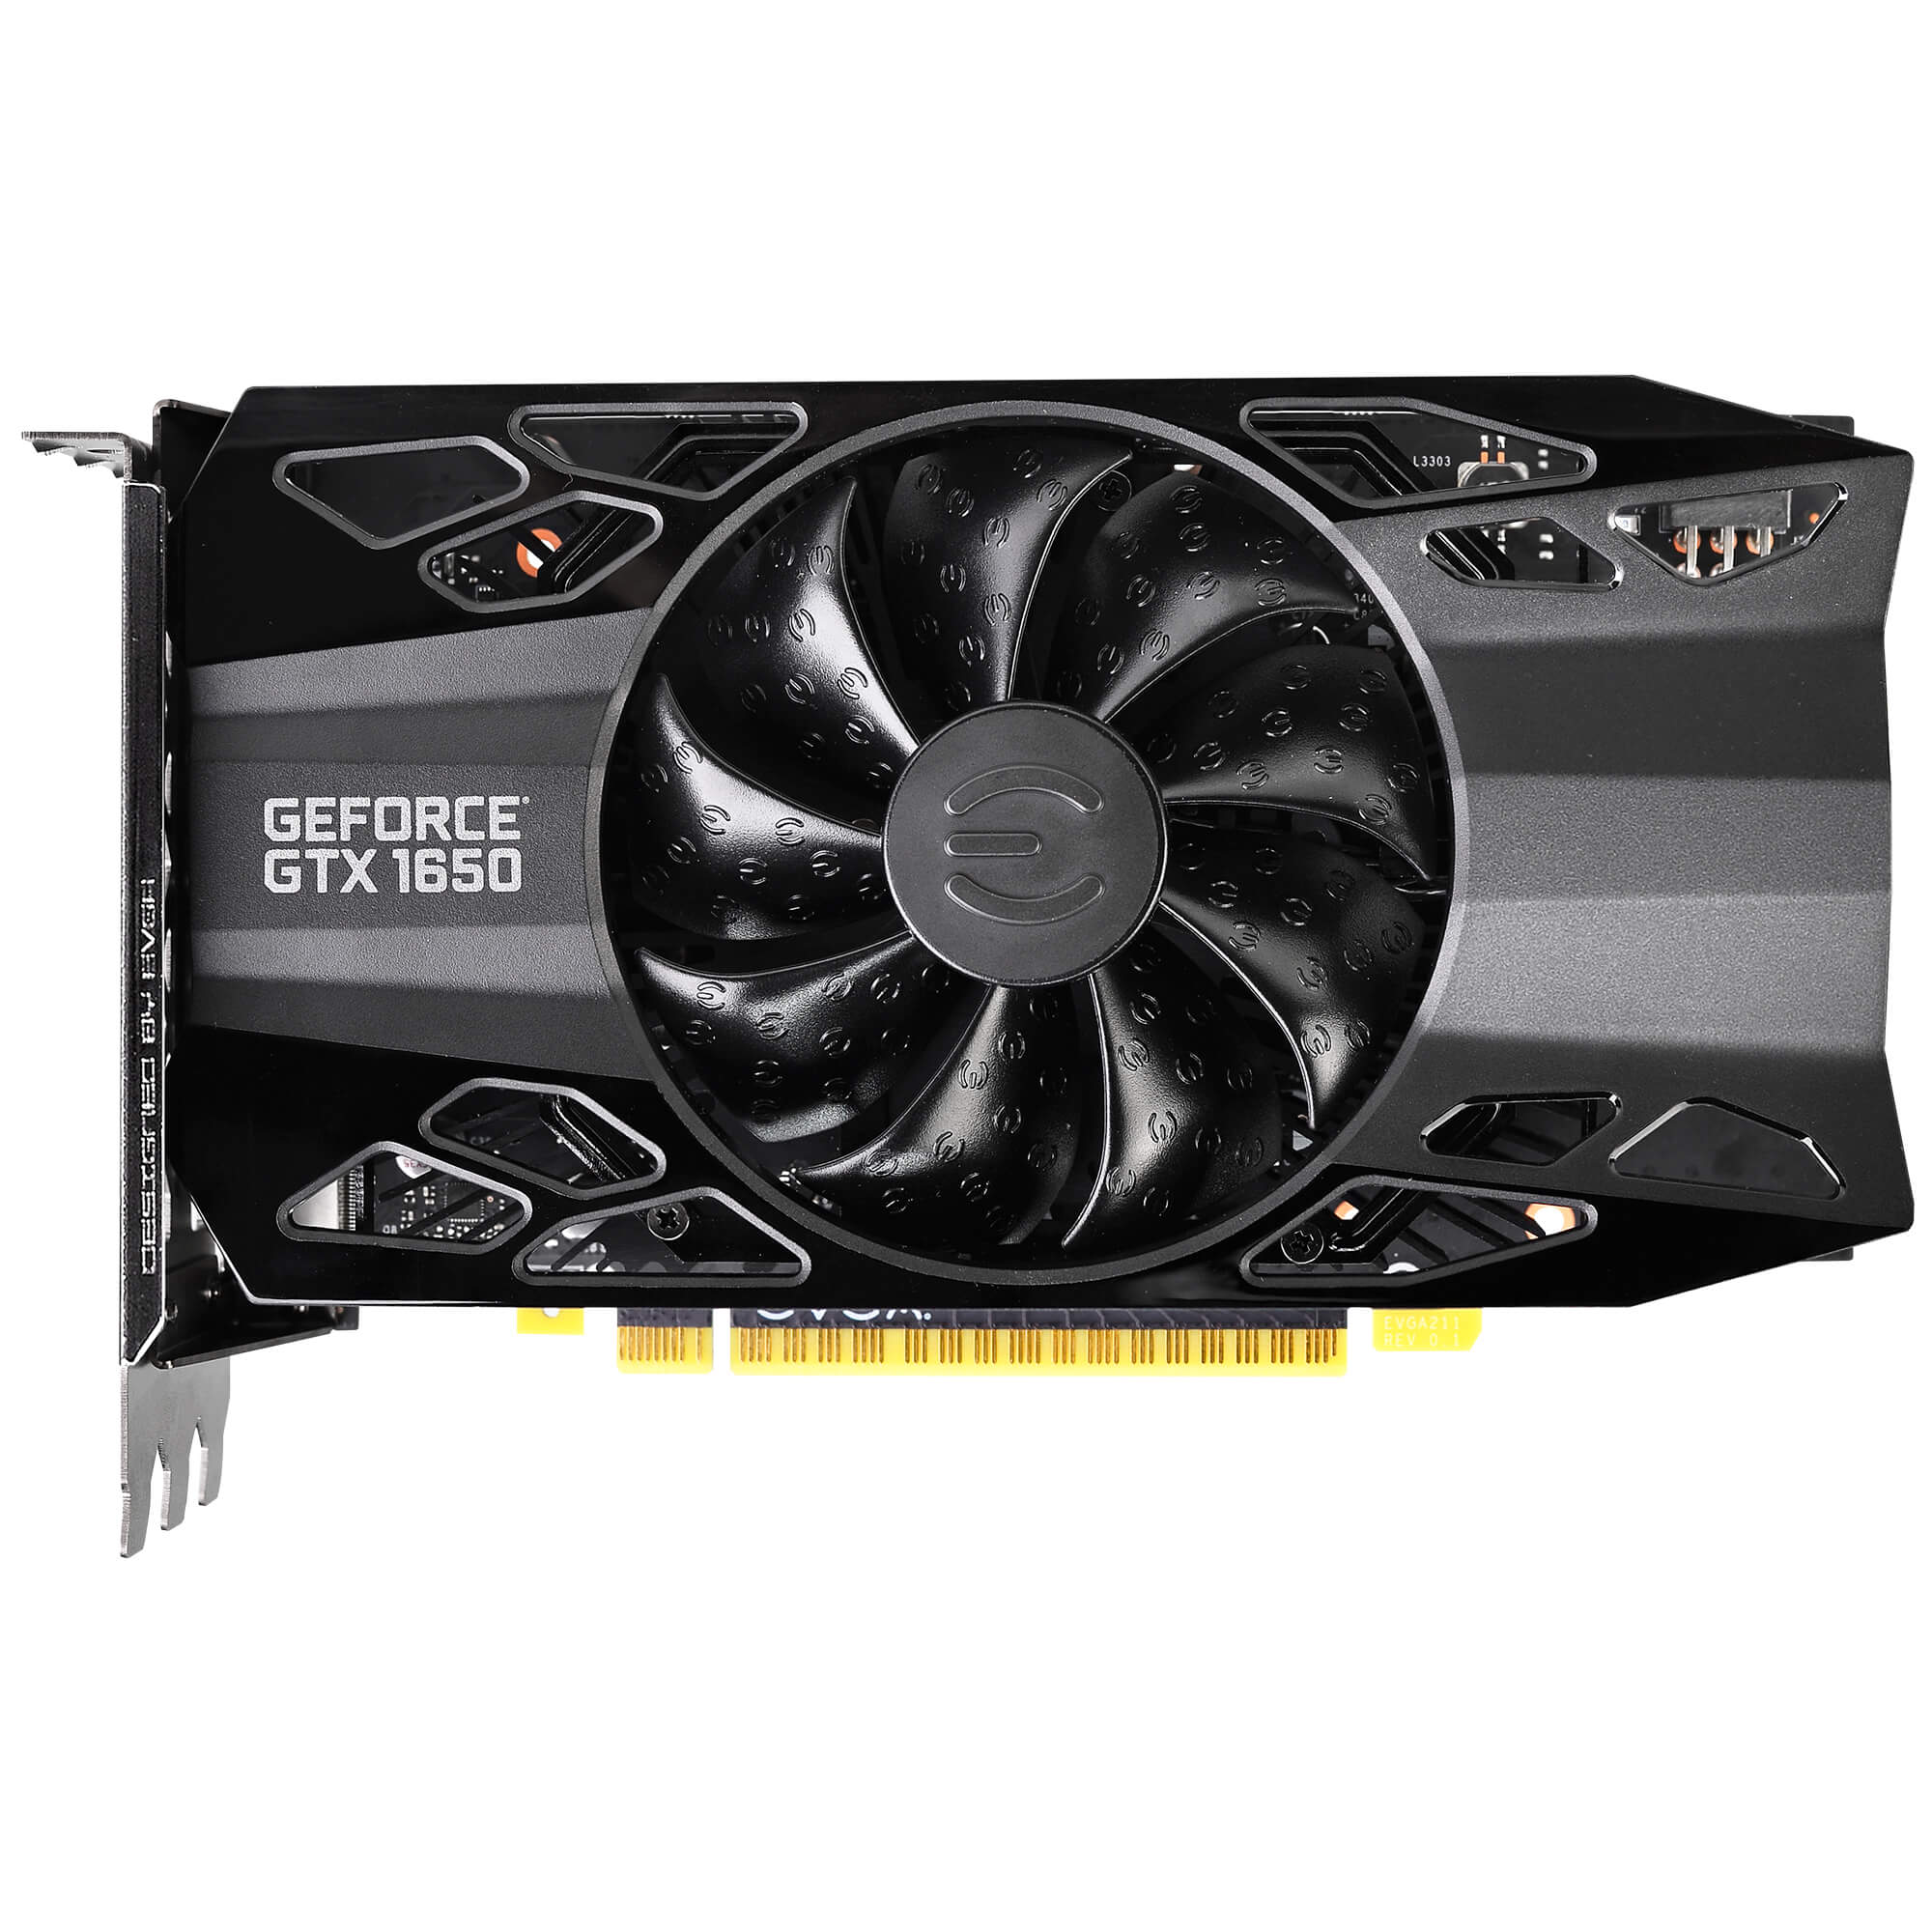 Nvidia GeForce GTX 1650 4GB (GDDR5) | GPUSpecs.com